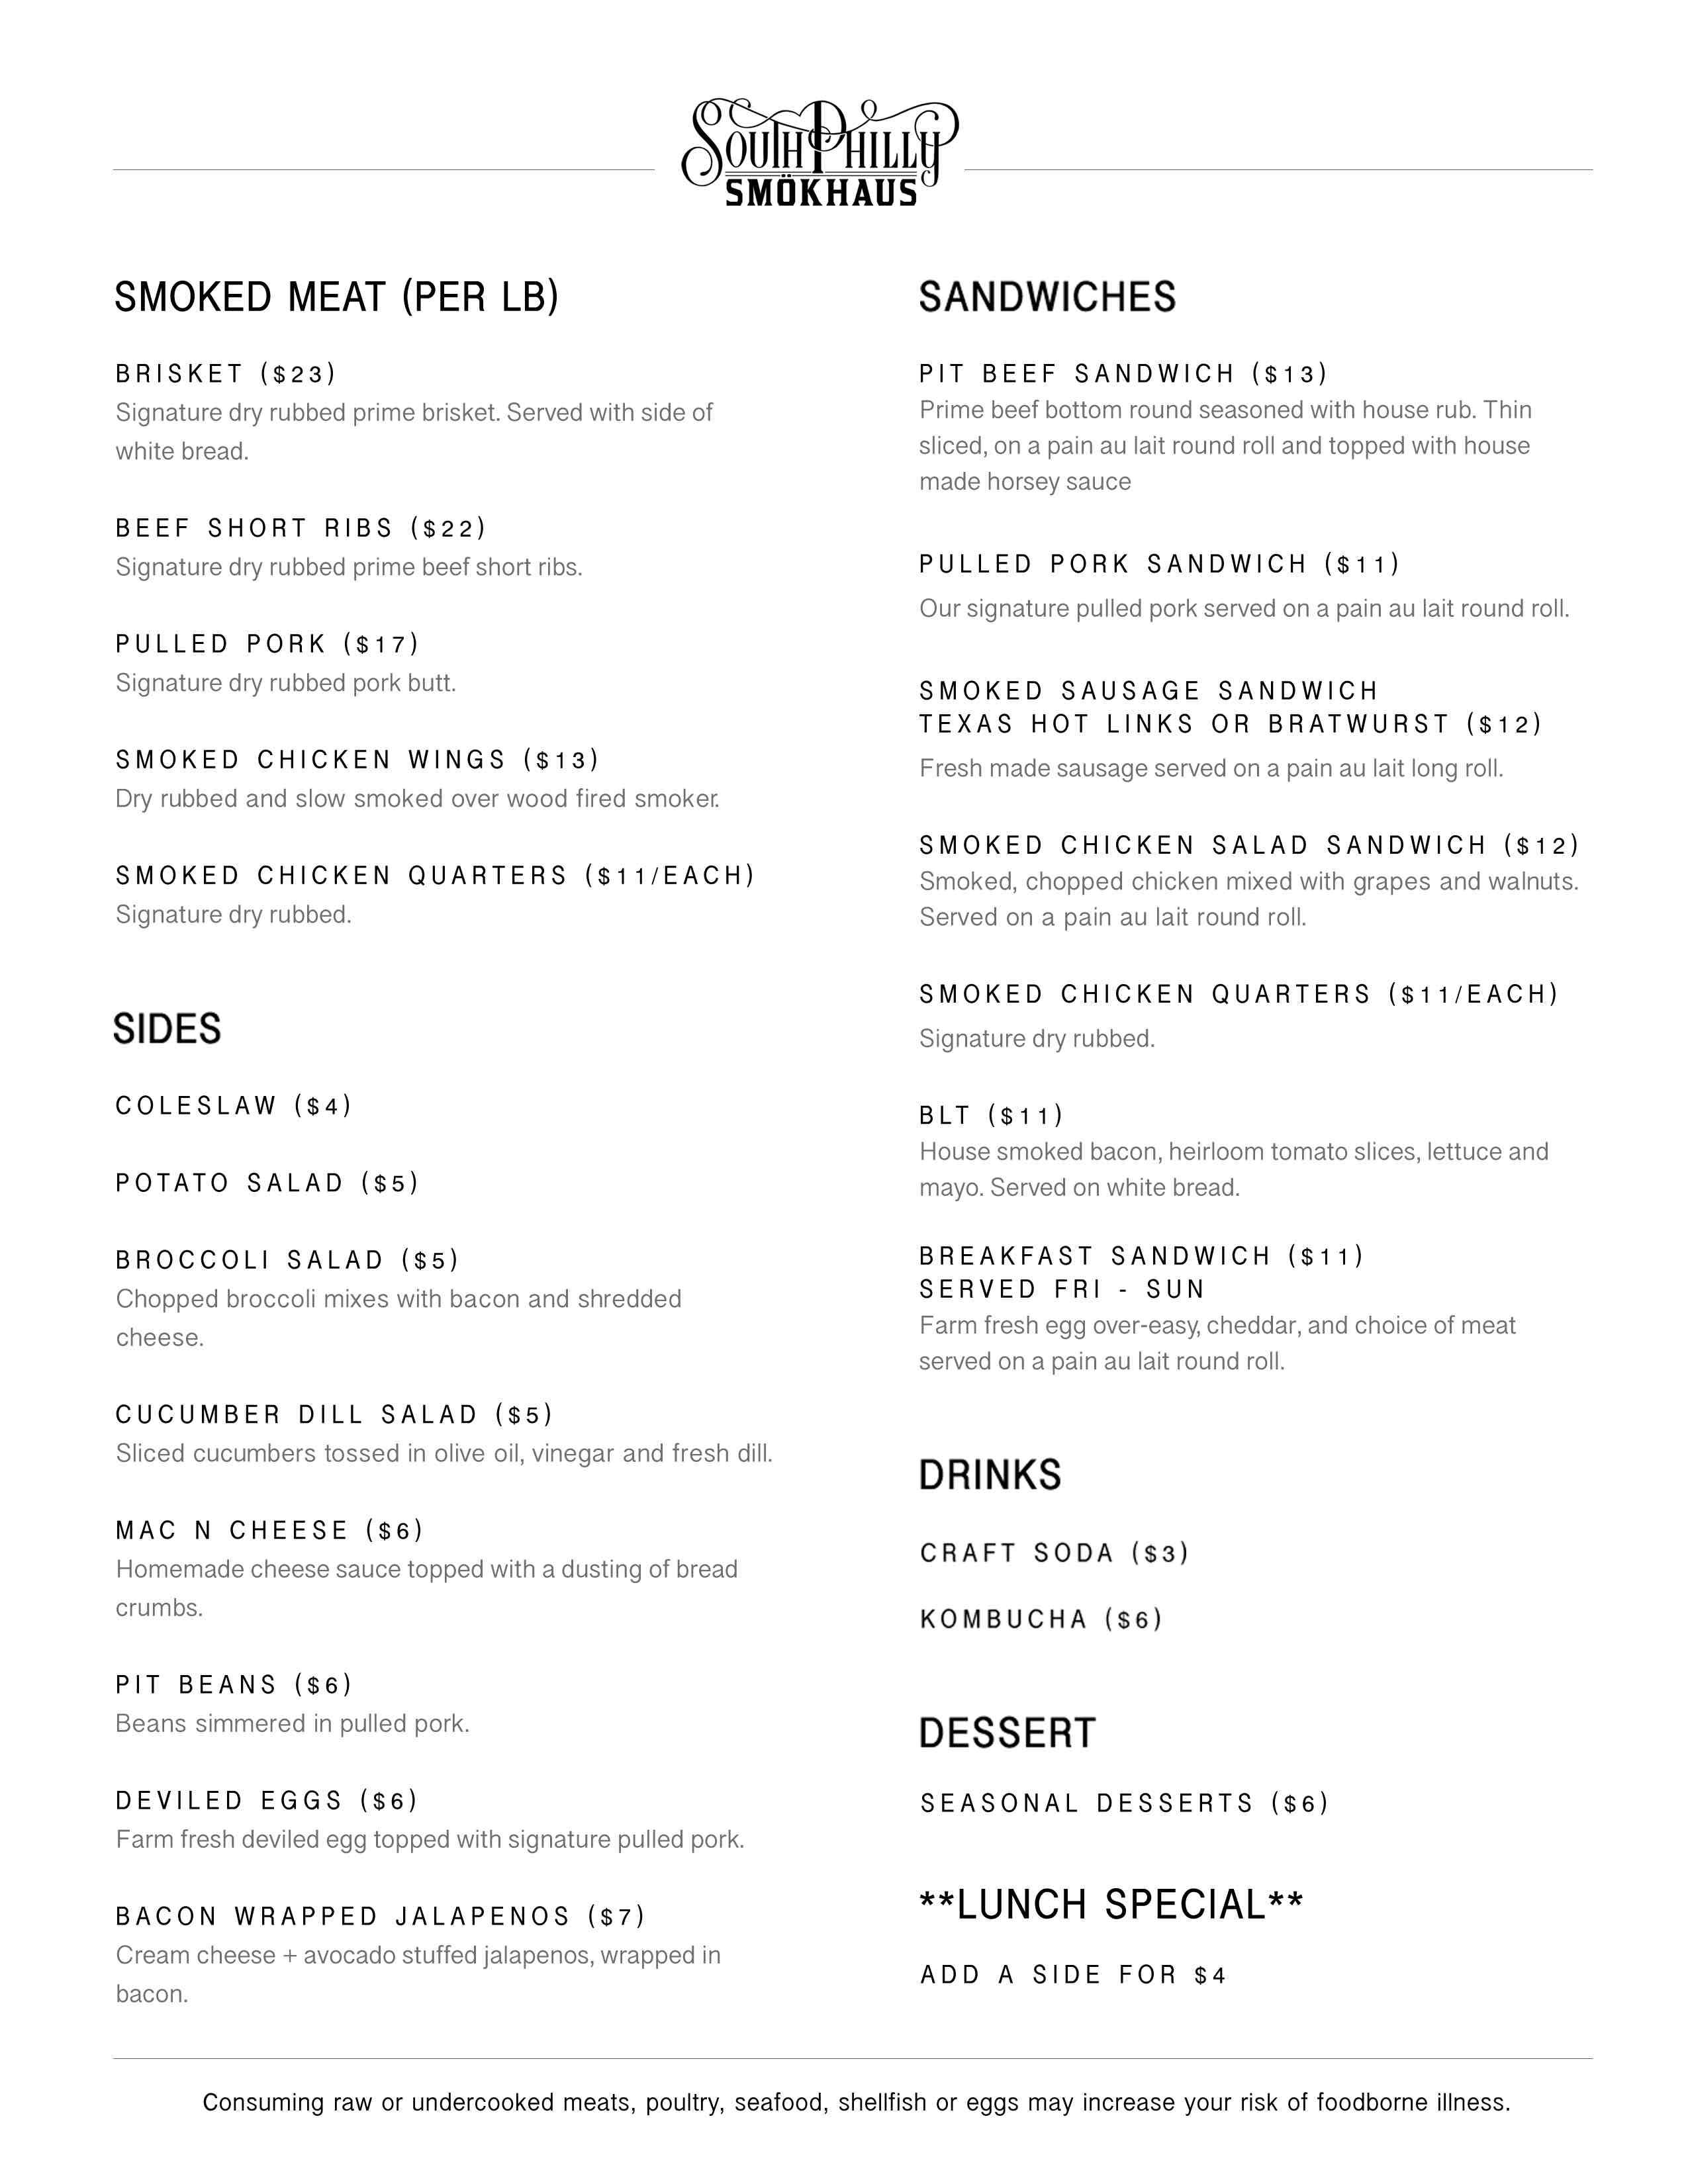 south philly smokhaus menu